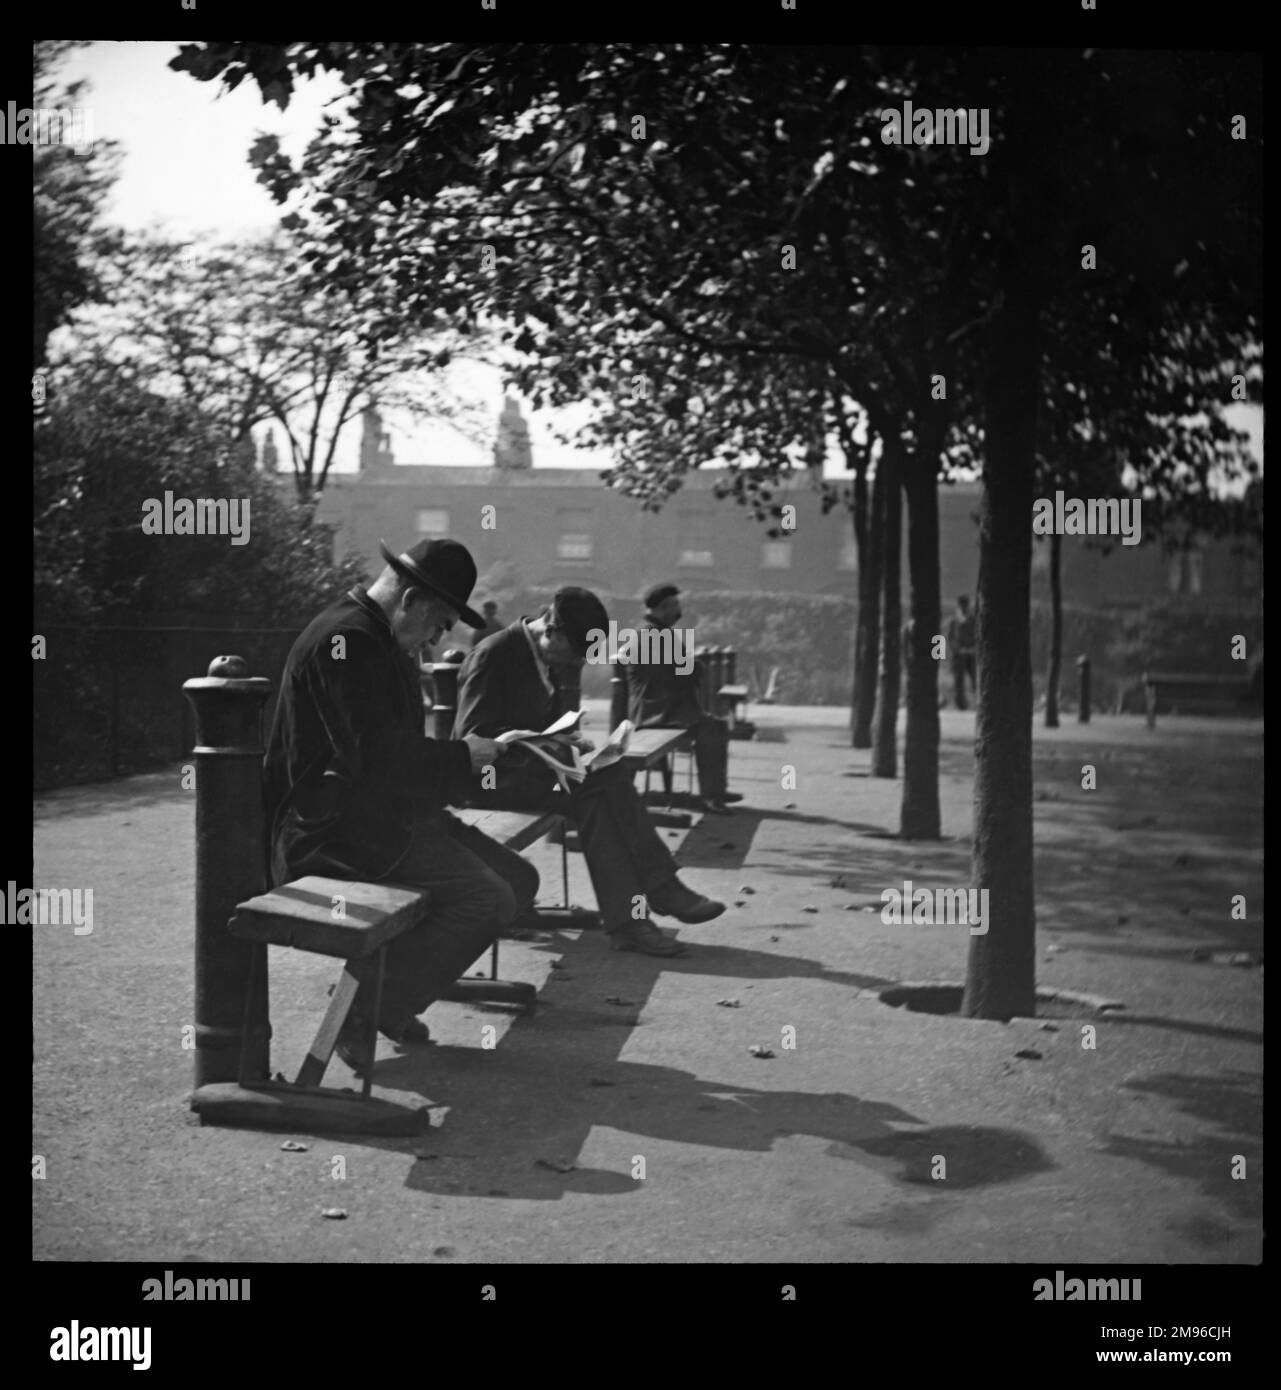 Männer, die auf Bänken in einem nicht identifizierten Londoner Park sitzen. Im Hintergrund ist eine Terrasse mit Häusern zu sehen. Stockfoto